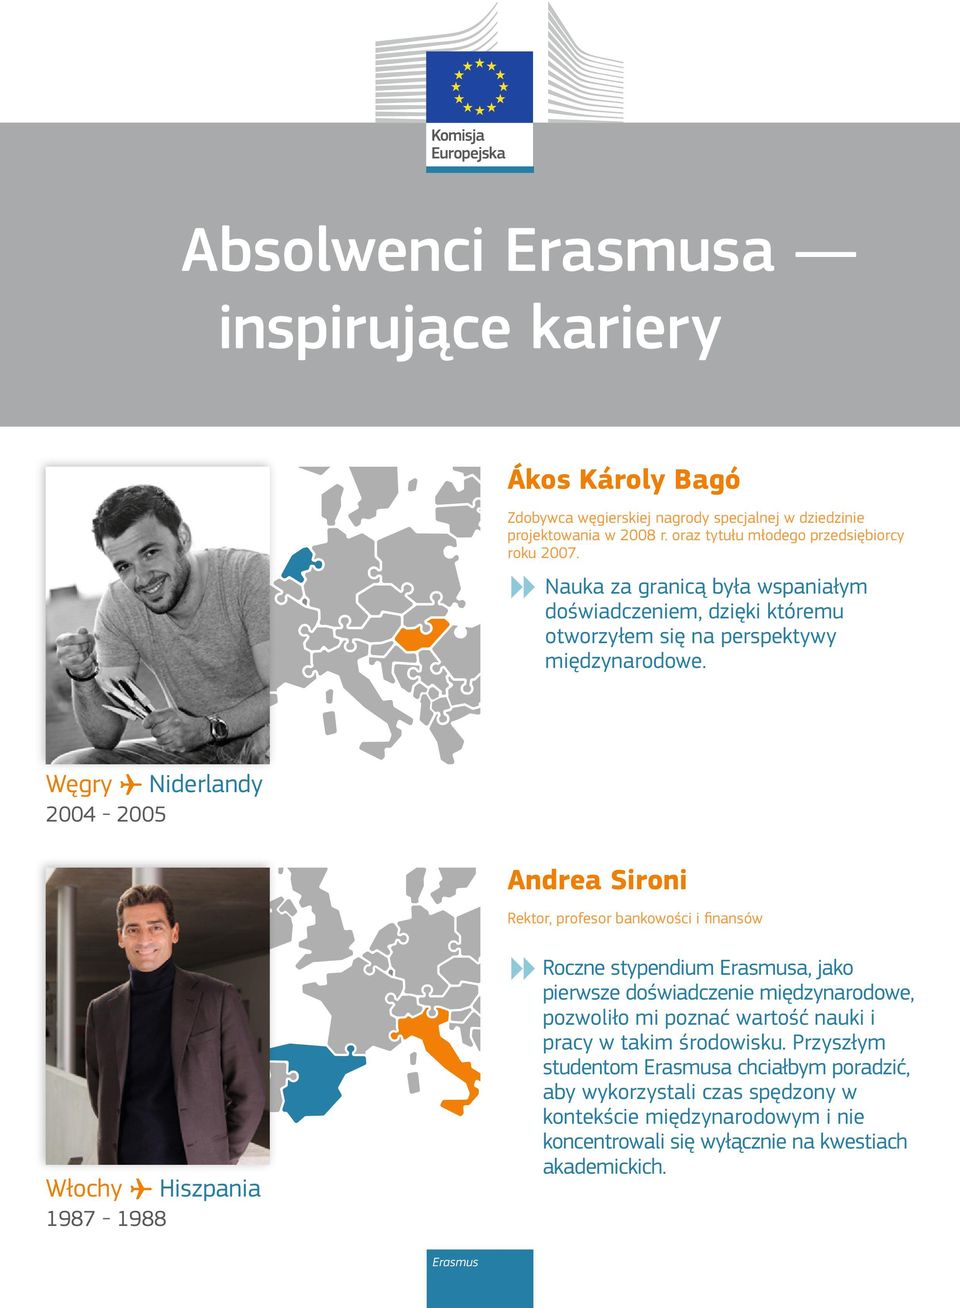 Węgry Niderlandy 2004-2005 Andrea Sironi Rektor, profesor bankowości i finansów m Roczne stypendium Erasmusa, jako pierwsze doświadczenie międzynarodowe, pozwoliło mi poznać